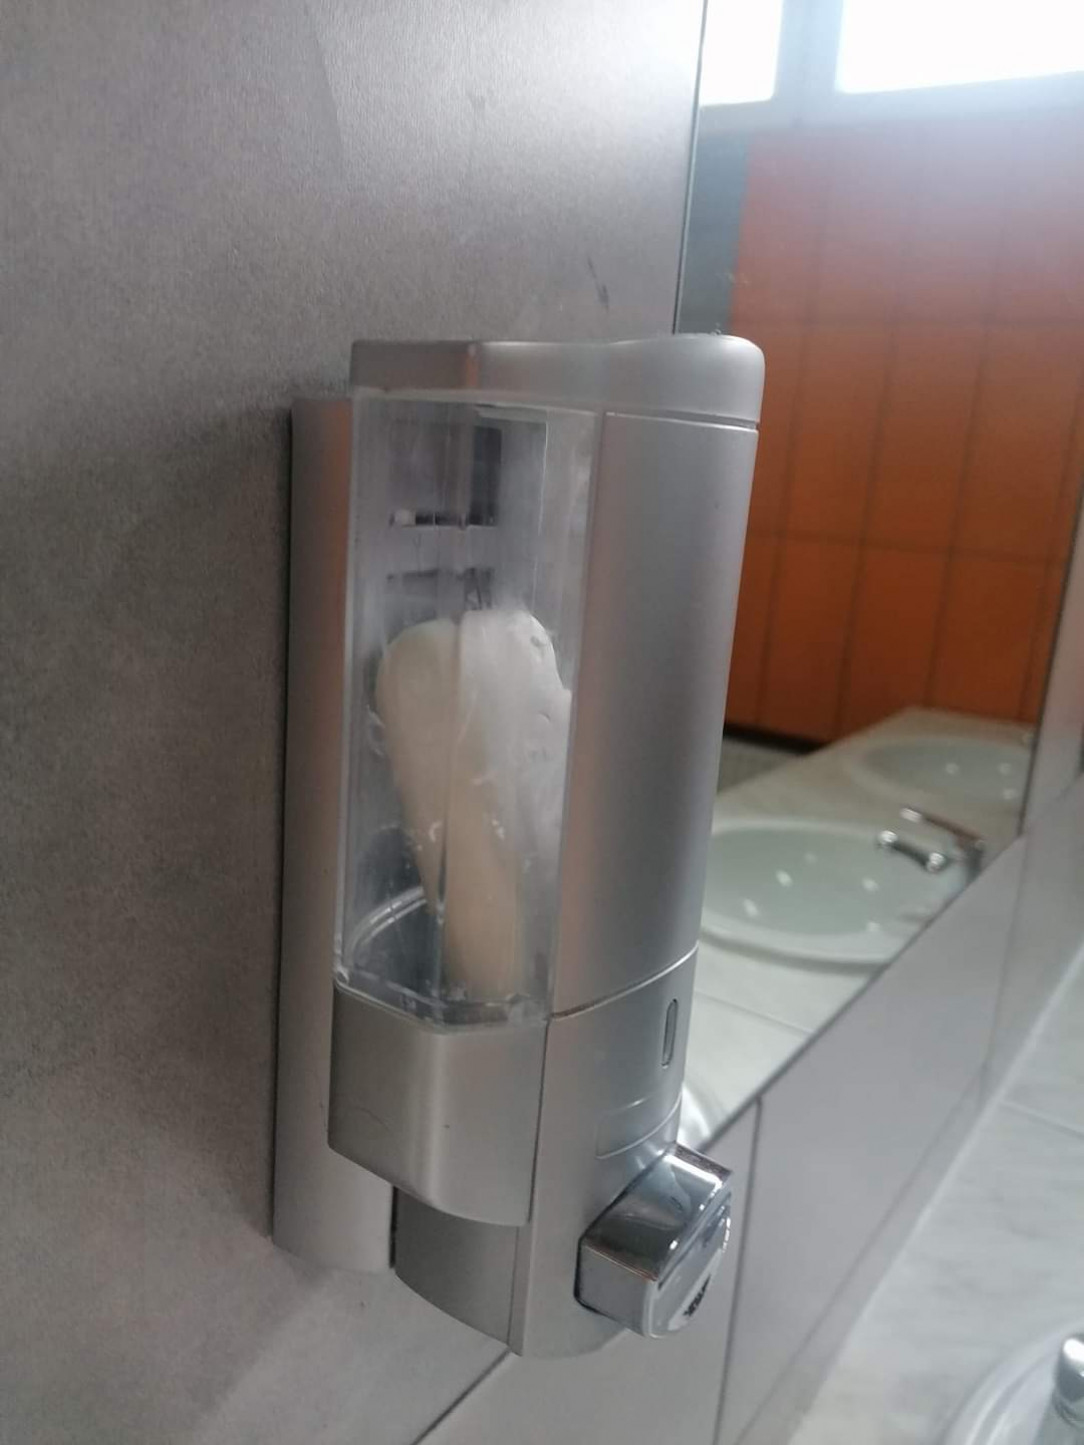 Re-filled the soap dispenser, boss